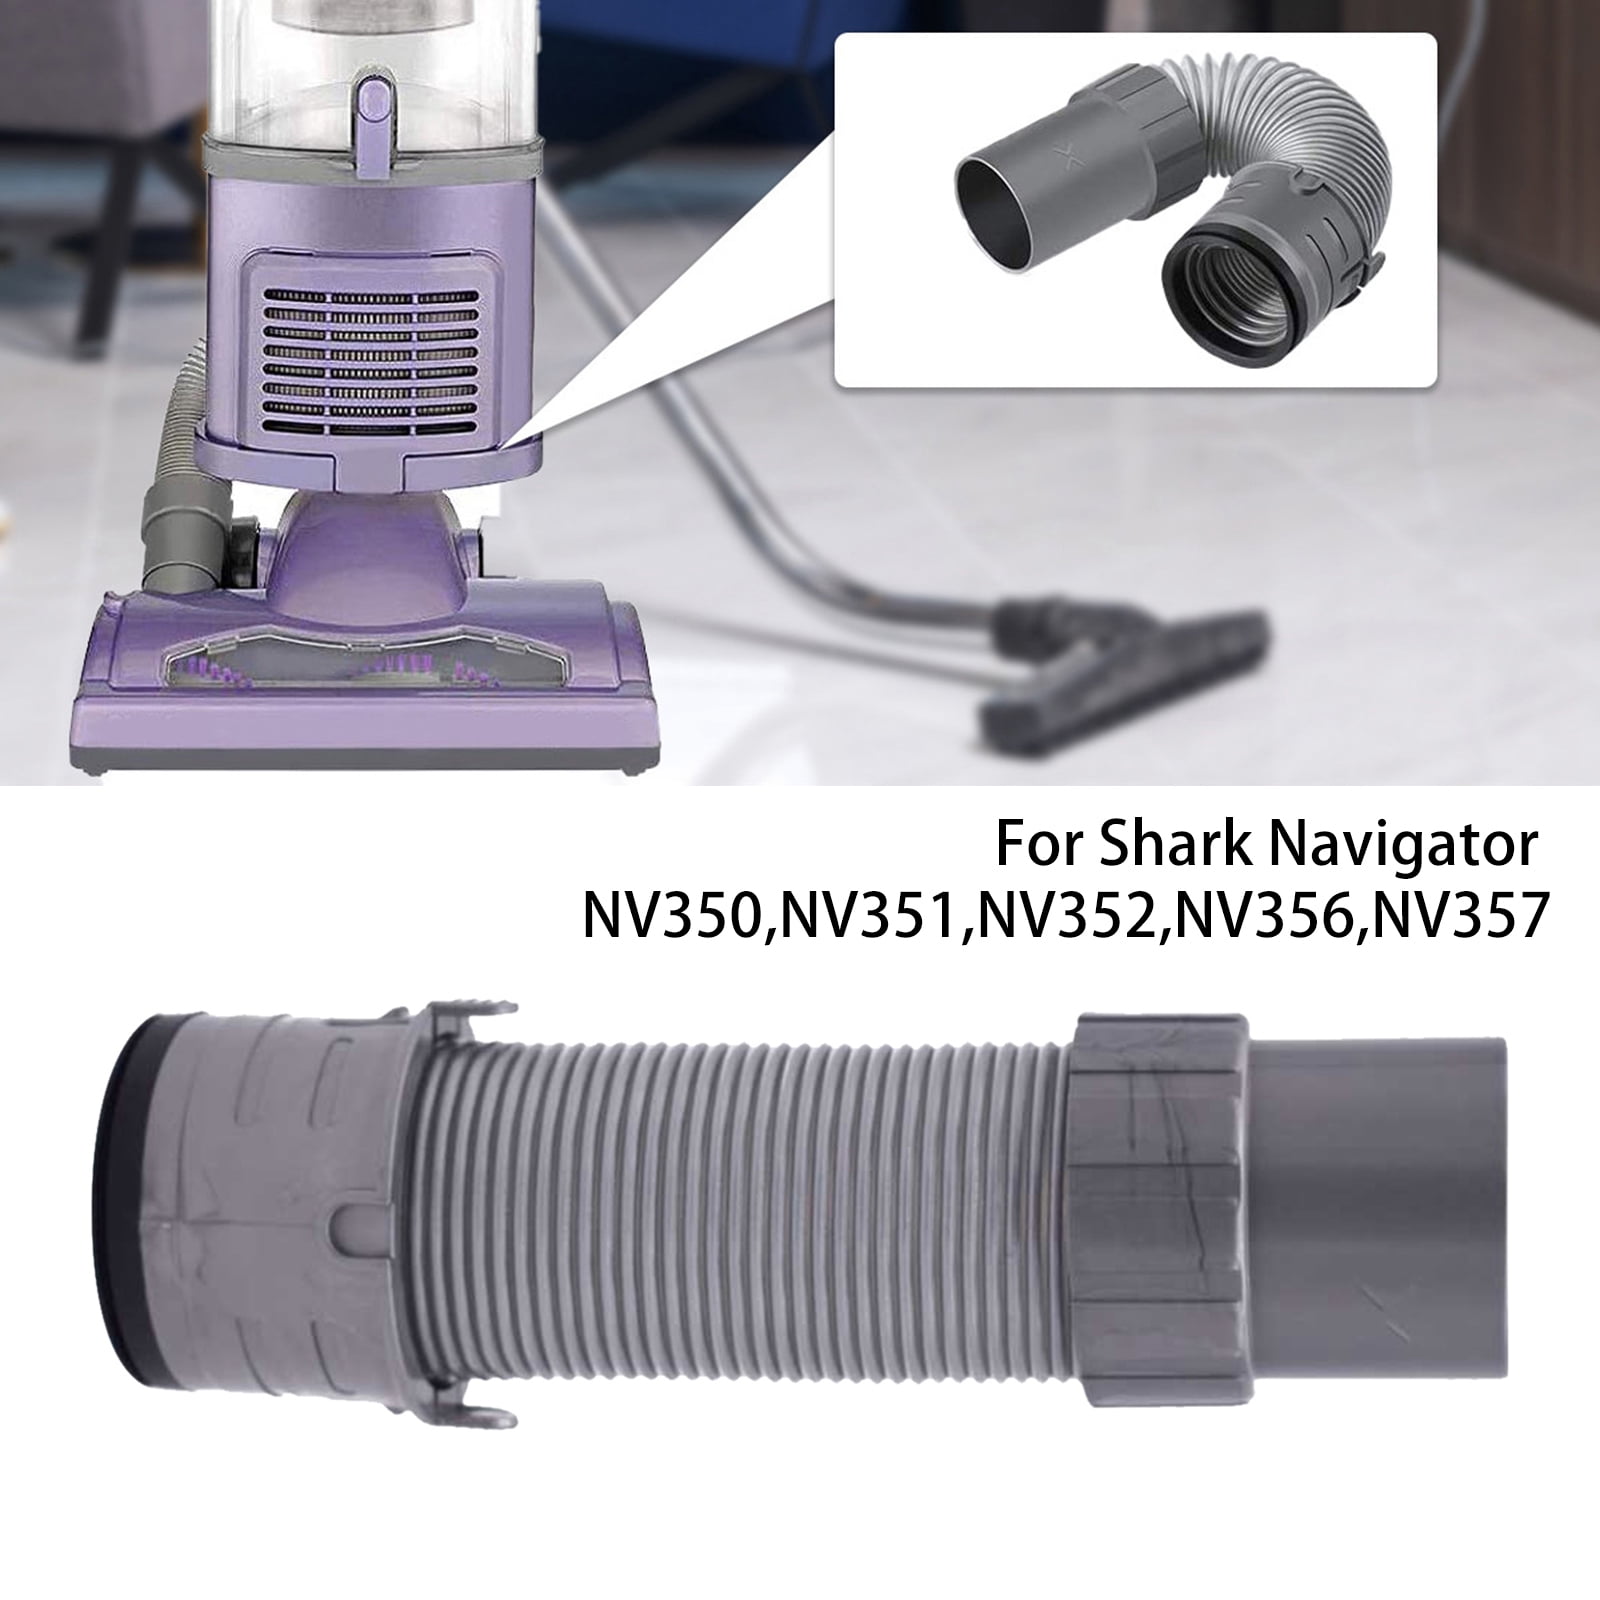 NV352 Espuma Fieltro & Filtro Para Aspiradora Shark Navigator de elevación de distancia NV351 NV355 